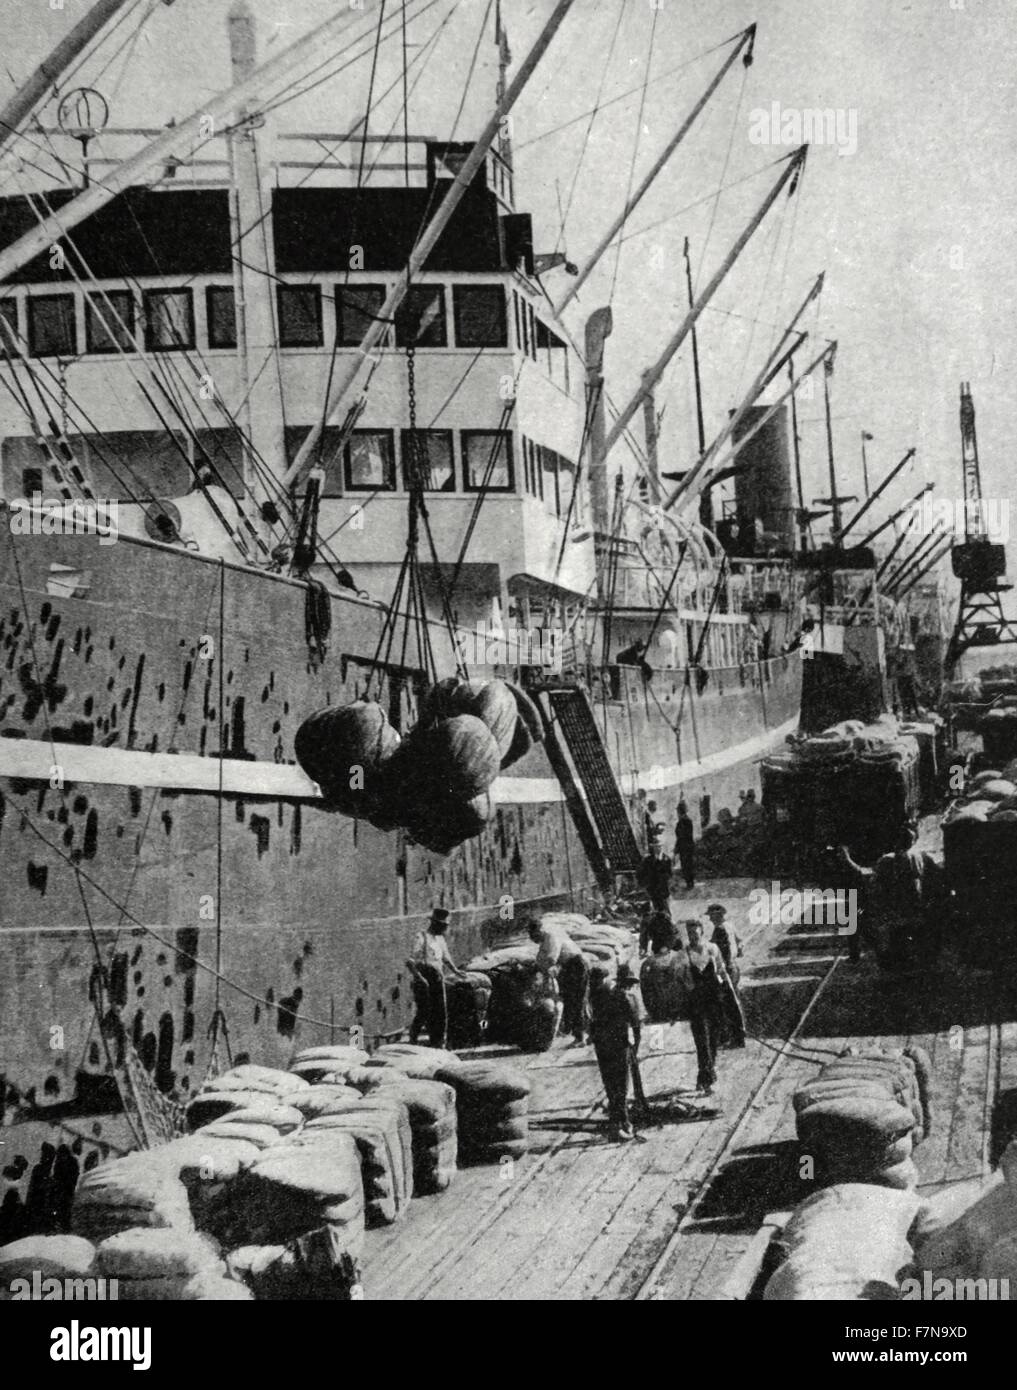 Photographie de balles de laine étant chargé à Victoria Docks à Melbourne. La laine était le principe produit d'exportation. Datée 1938 Banque D'Images